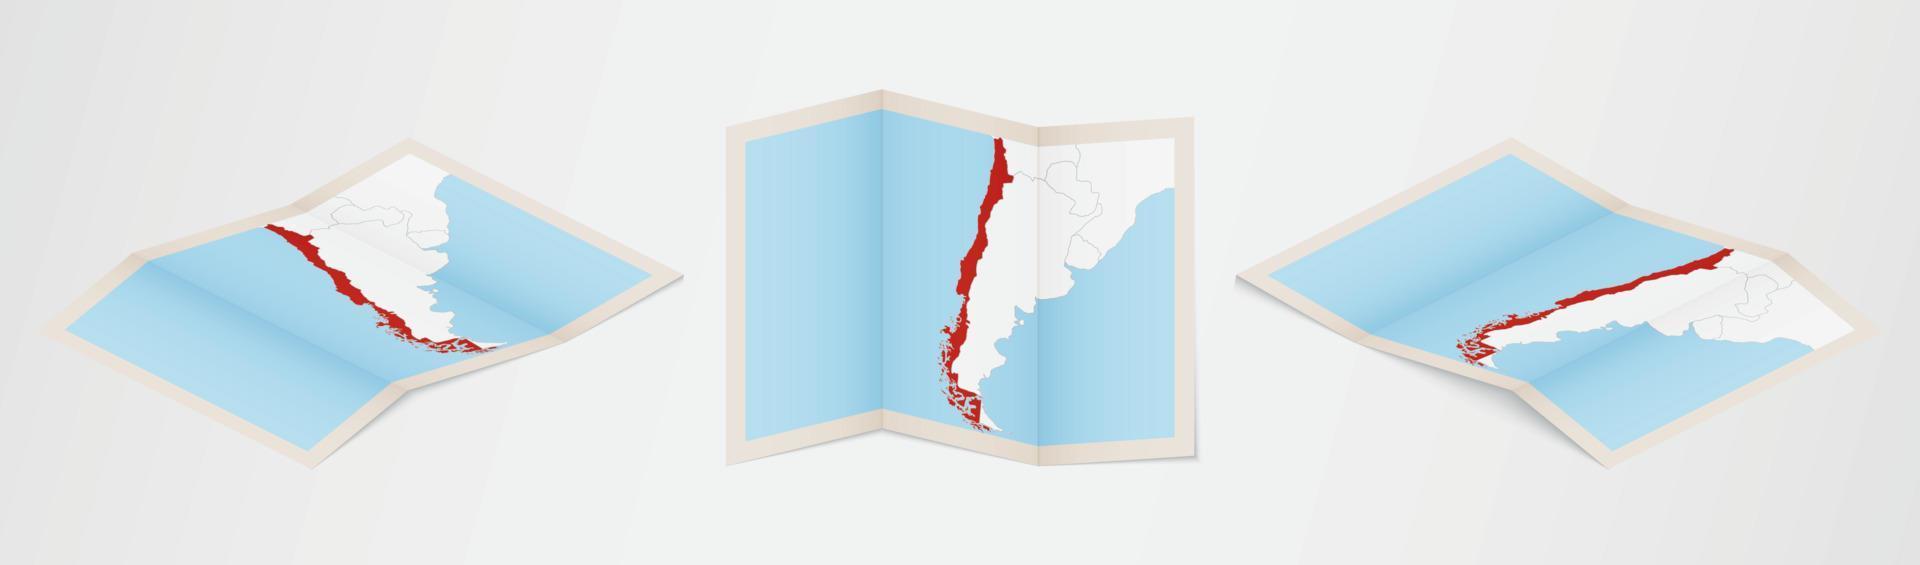 Faltkarte von Chile in drei verschiedenen Versionen. vektor